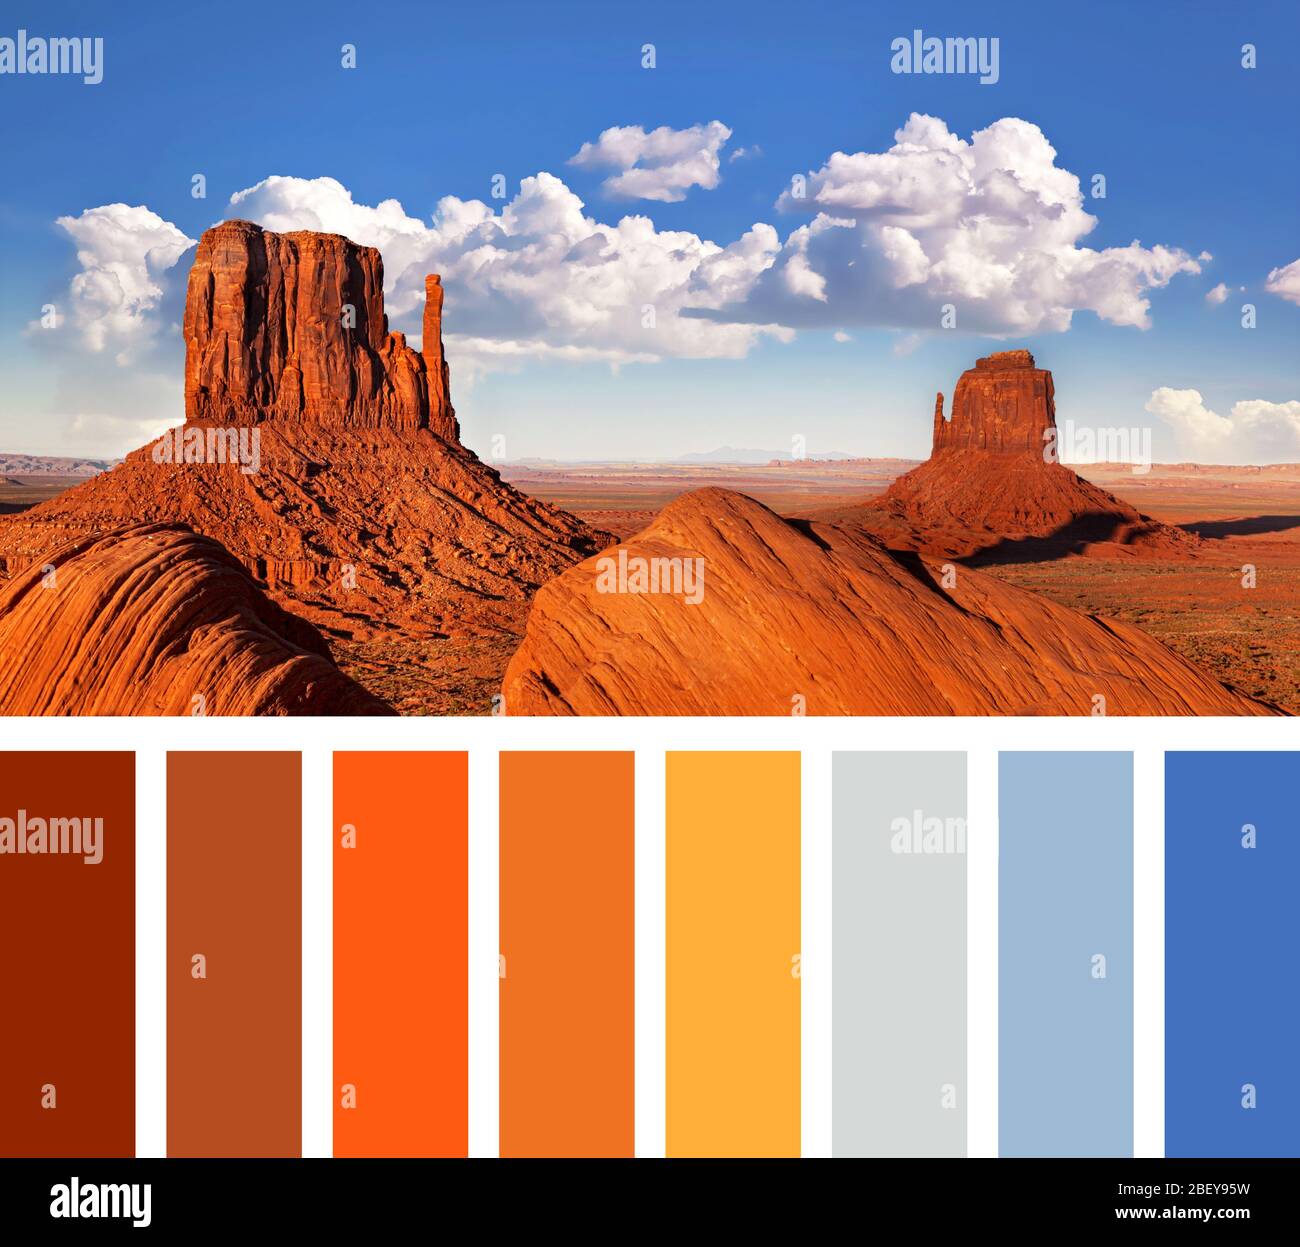 Die ikonischen Mitten Butte Felsformationen des Monument Valley, in einer Farbpalette mit kostenlosen Farbfeldern Stockfoto